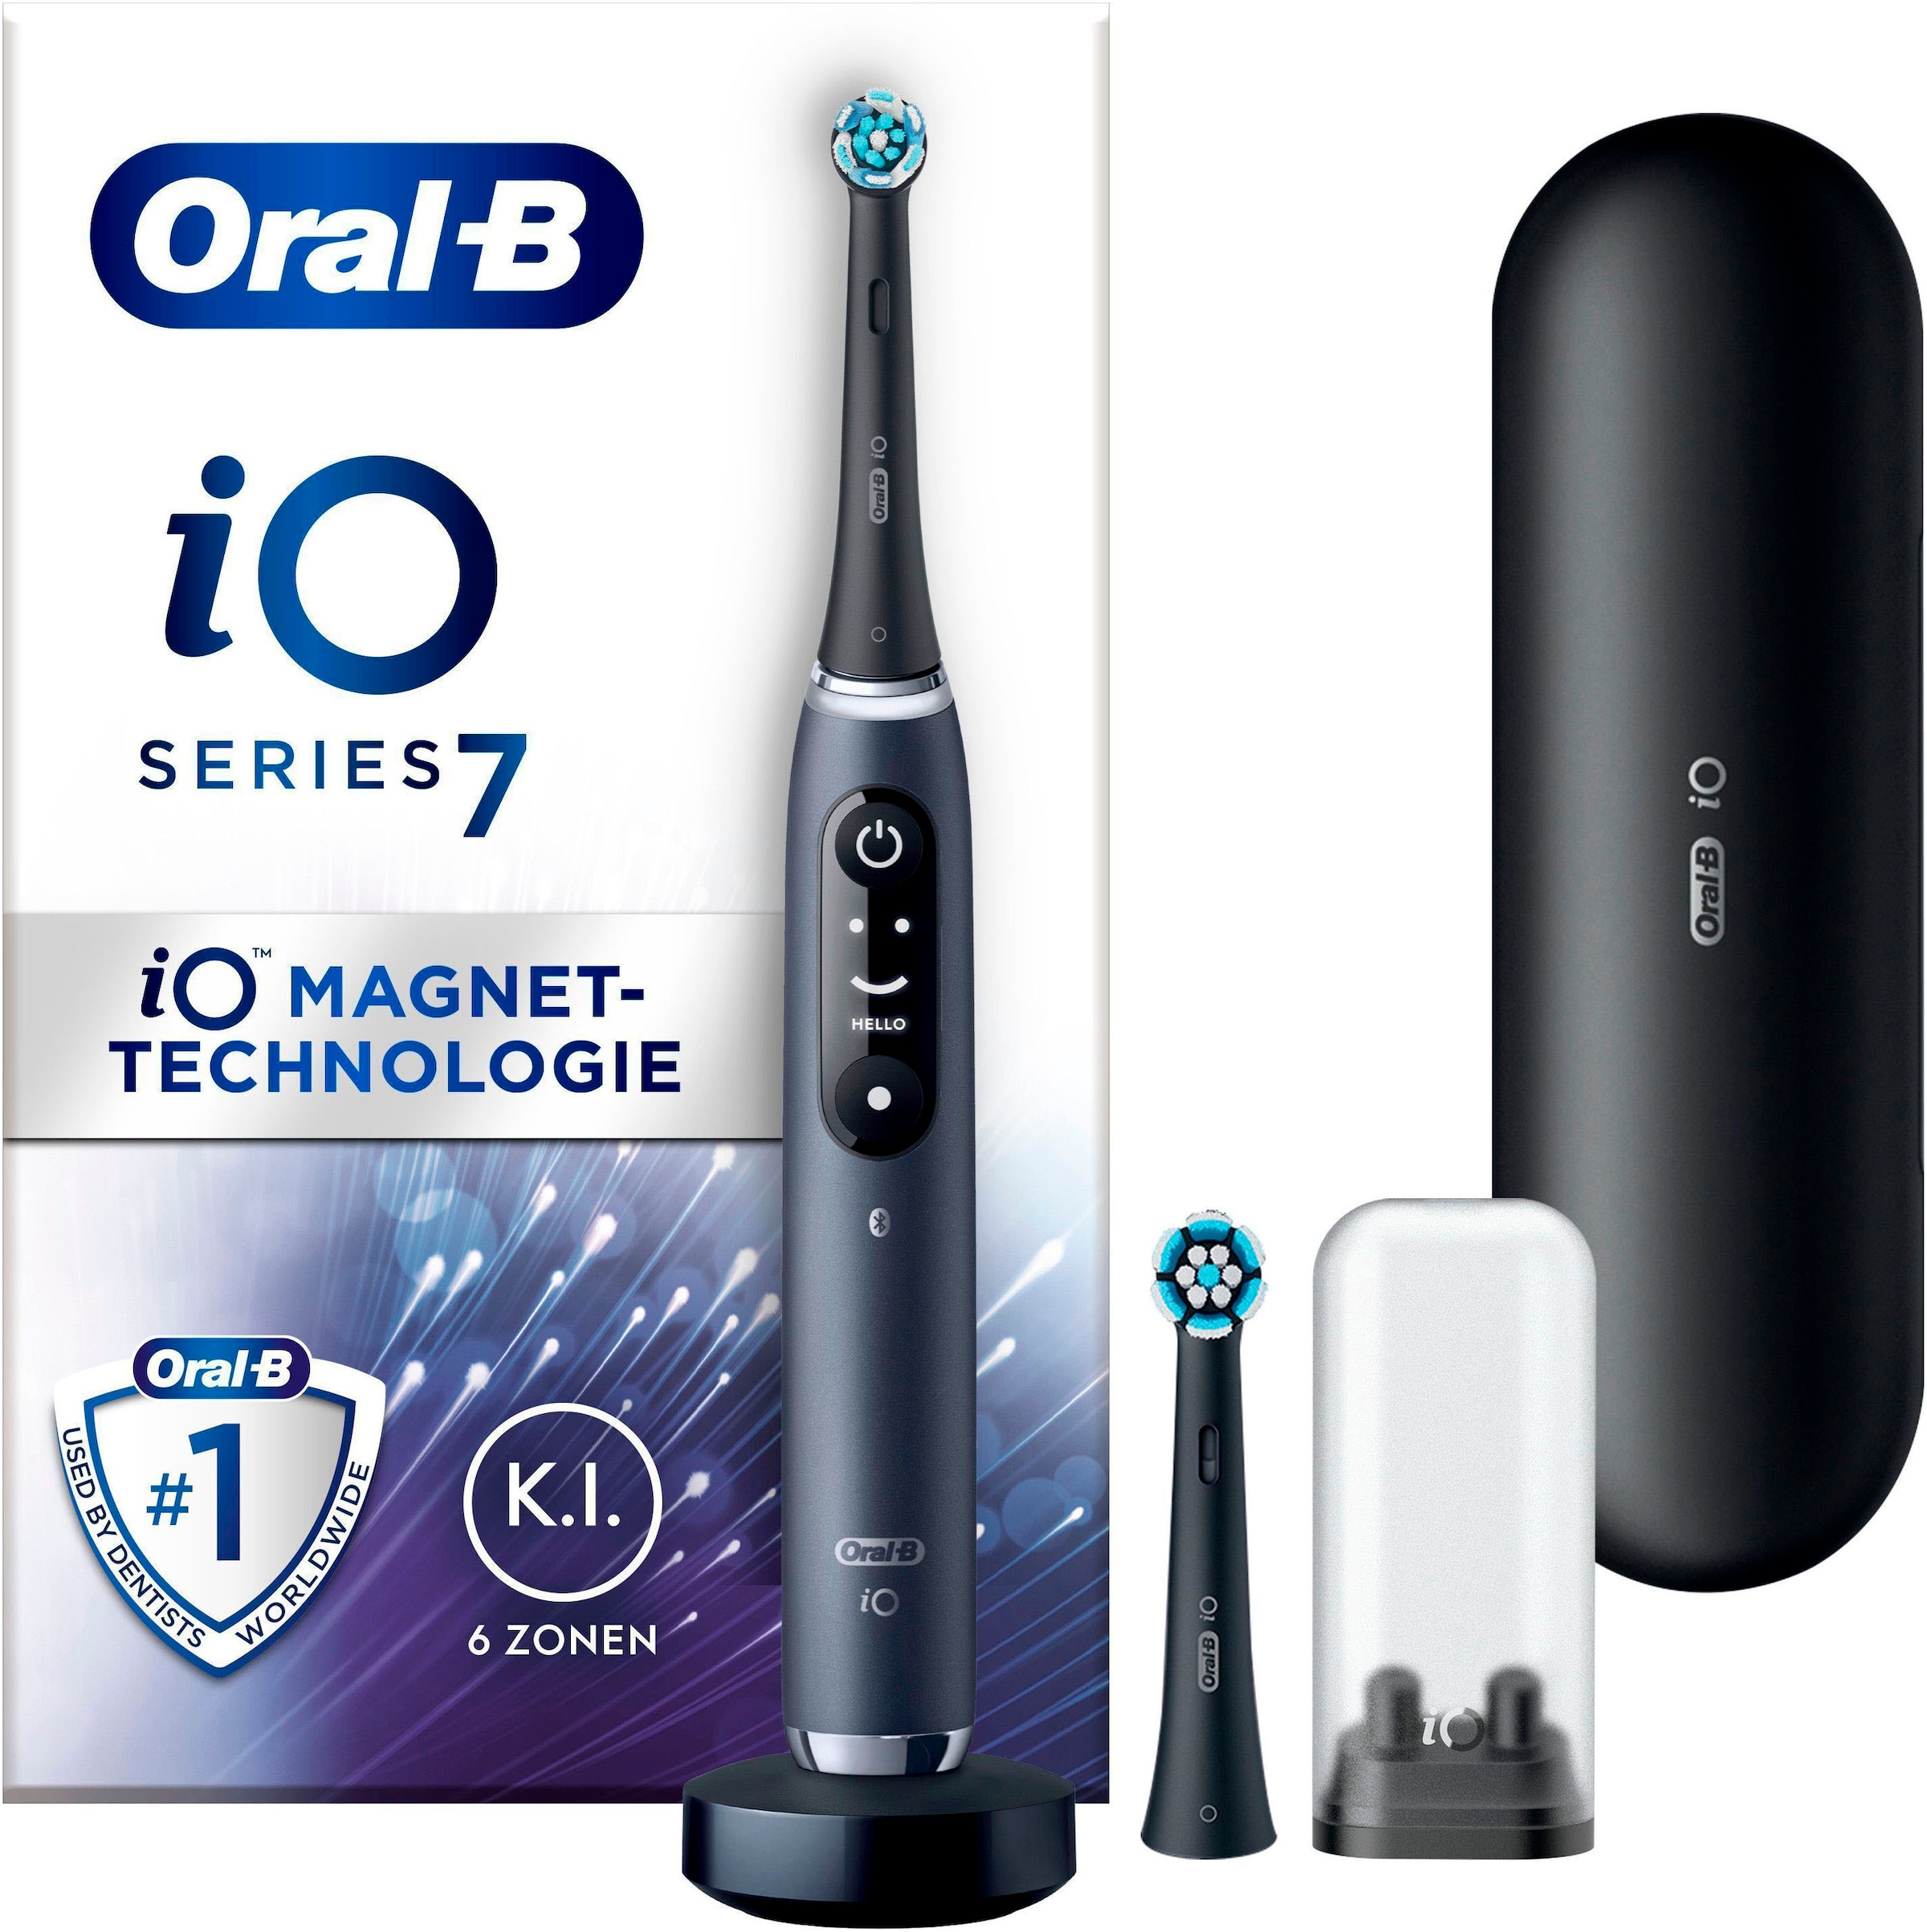 Oral-B Elektrische Zahnbürste »iO 7«, 2 St. Aufsteckbürsten, mit Magnet-Technologie, Display, 5 Putzmodi, Reiseetui